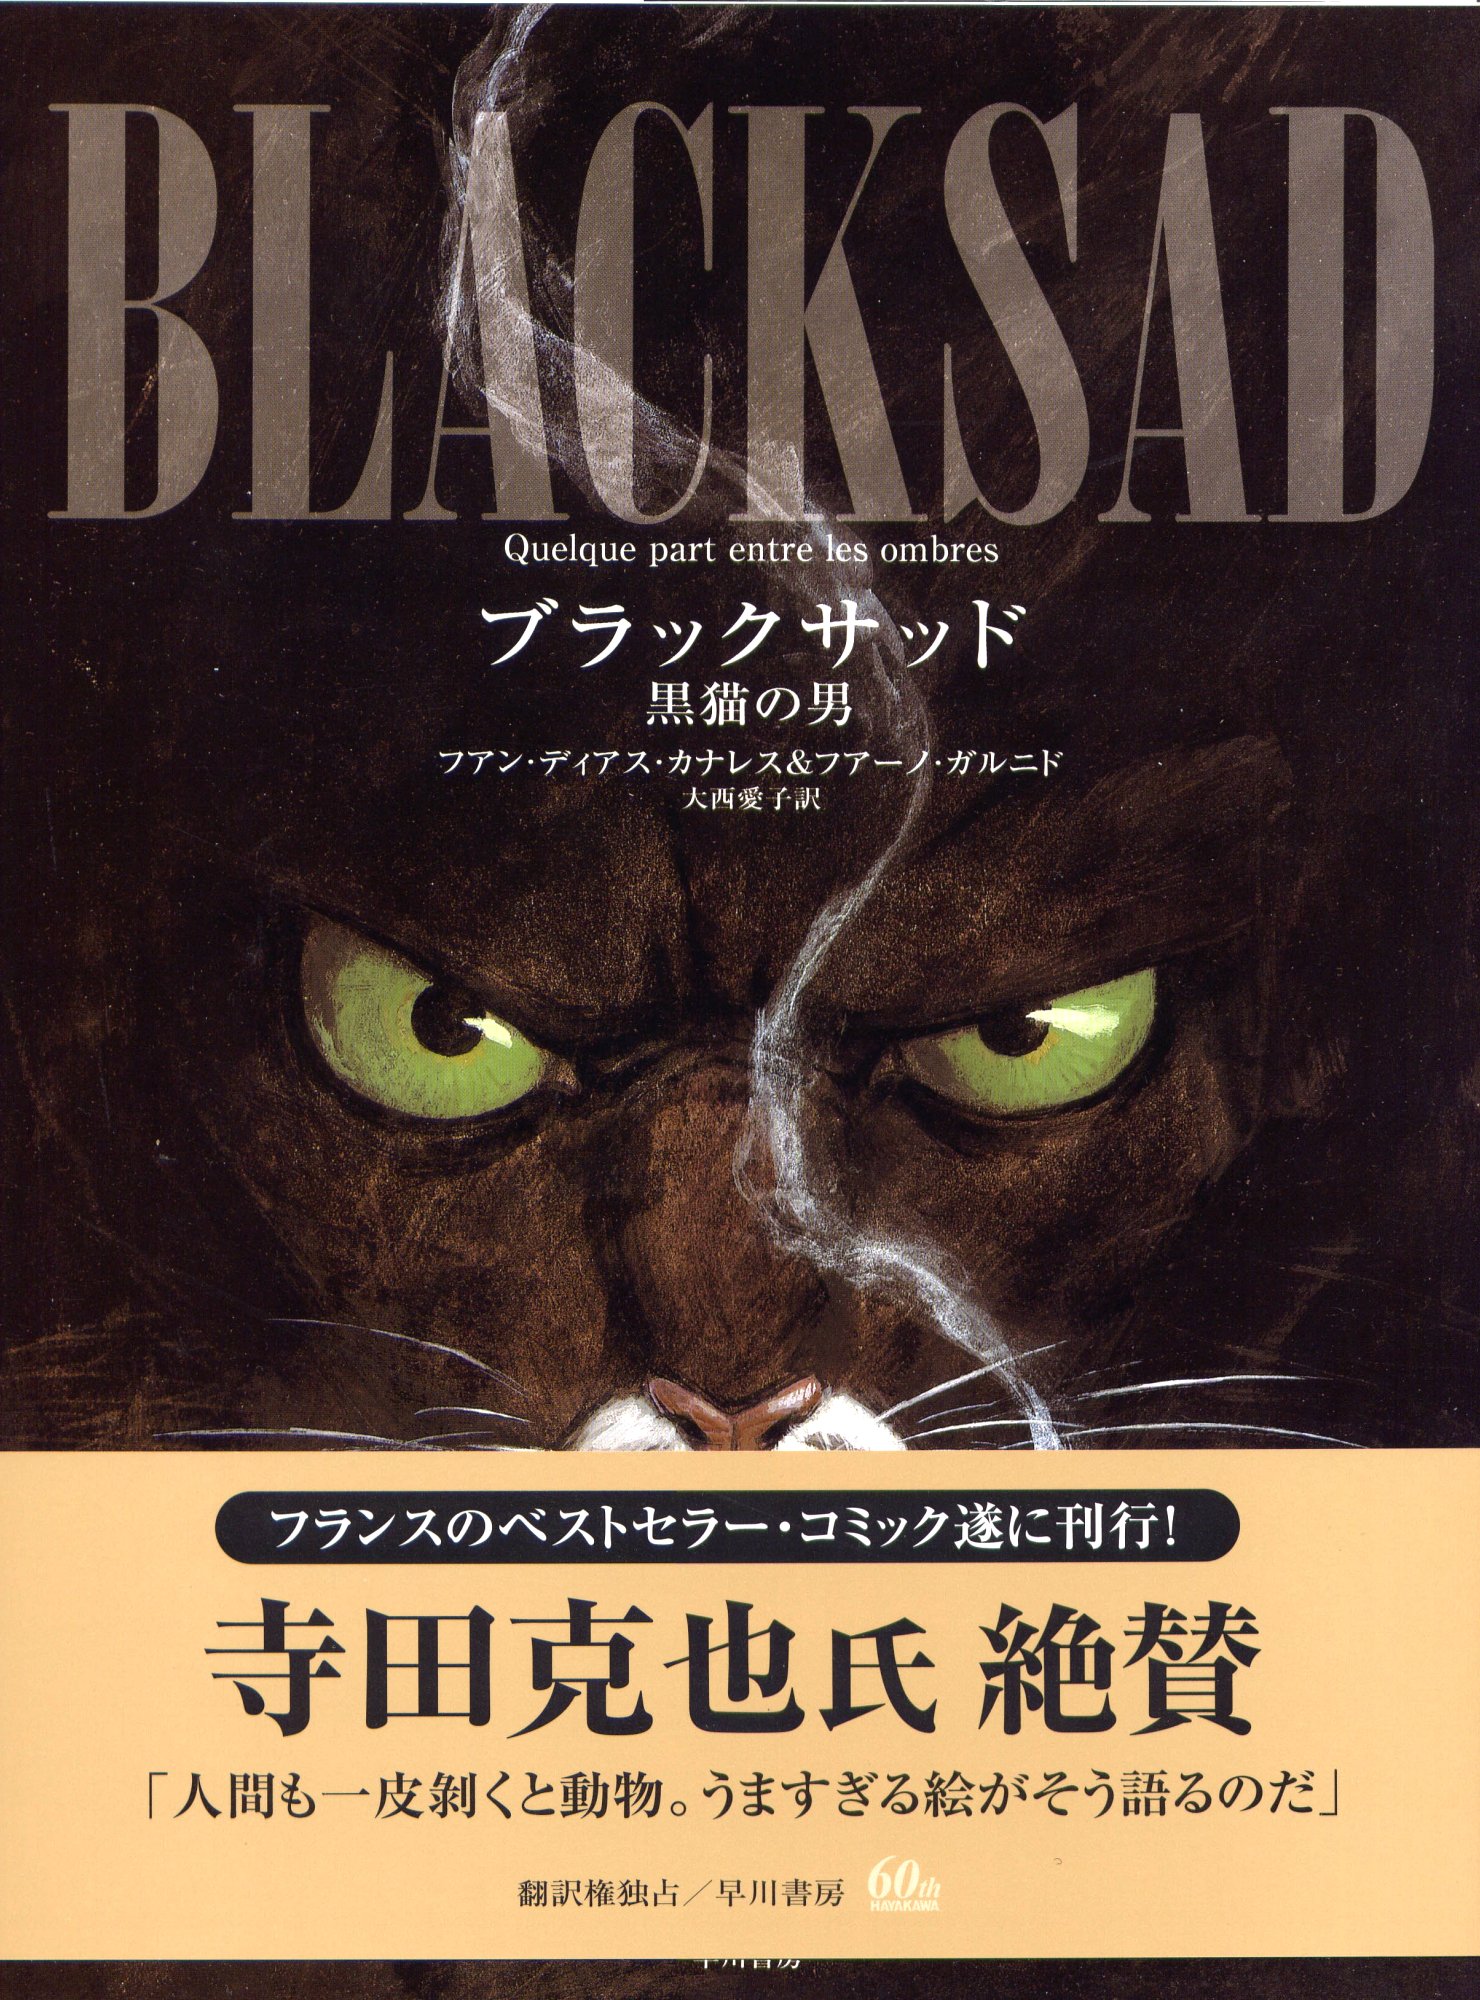 Blacksad BD Japon T1